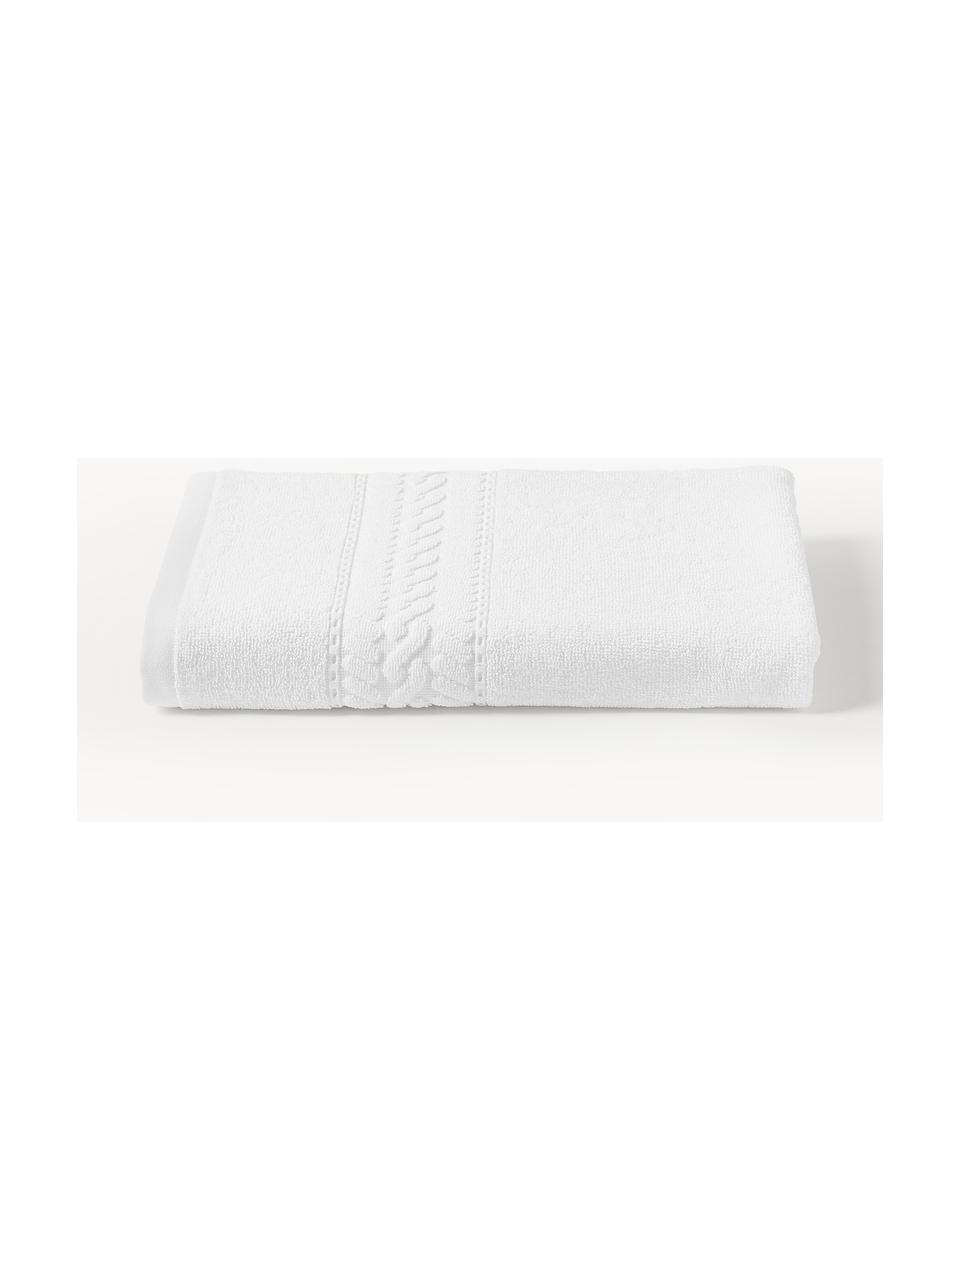 Handtuch Cordelia in verschiedenen Grössen, 100 % Baumwolle, Weiss, Handtuch, B 50 x L 100 cm, 2 Stück